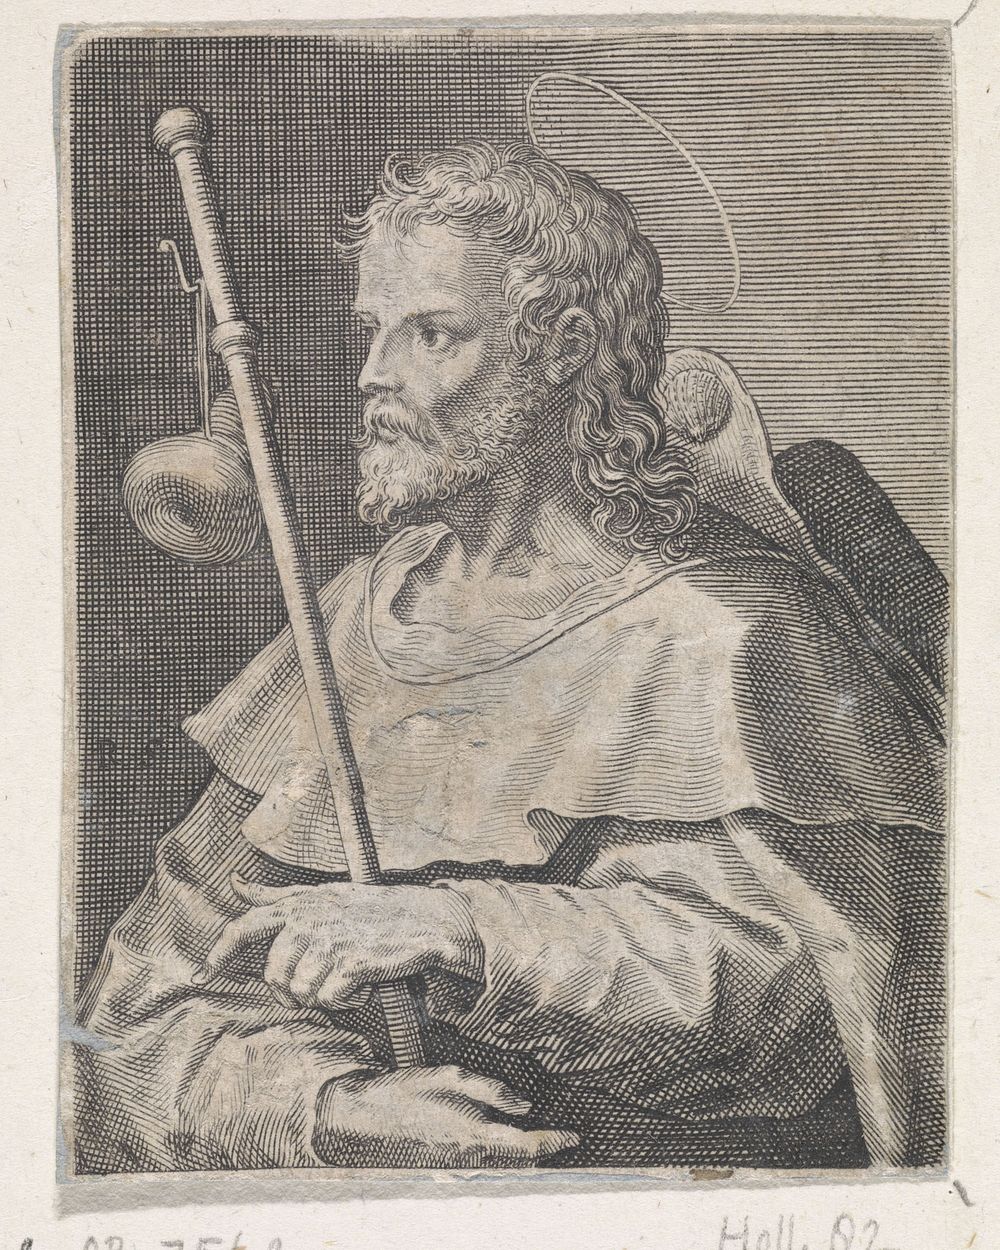 Apostel Jakobus de Meerdere (1570 - 1600) by Raphaël Sadeler I and Maerten de Vos